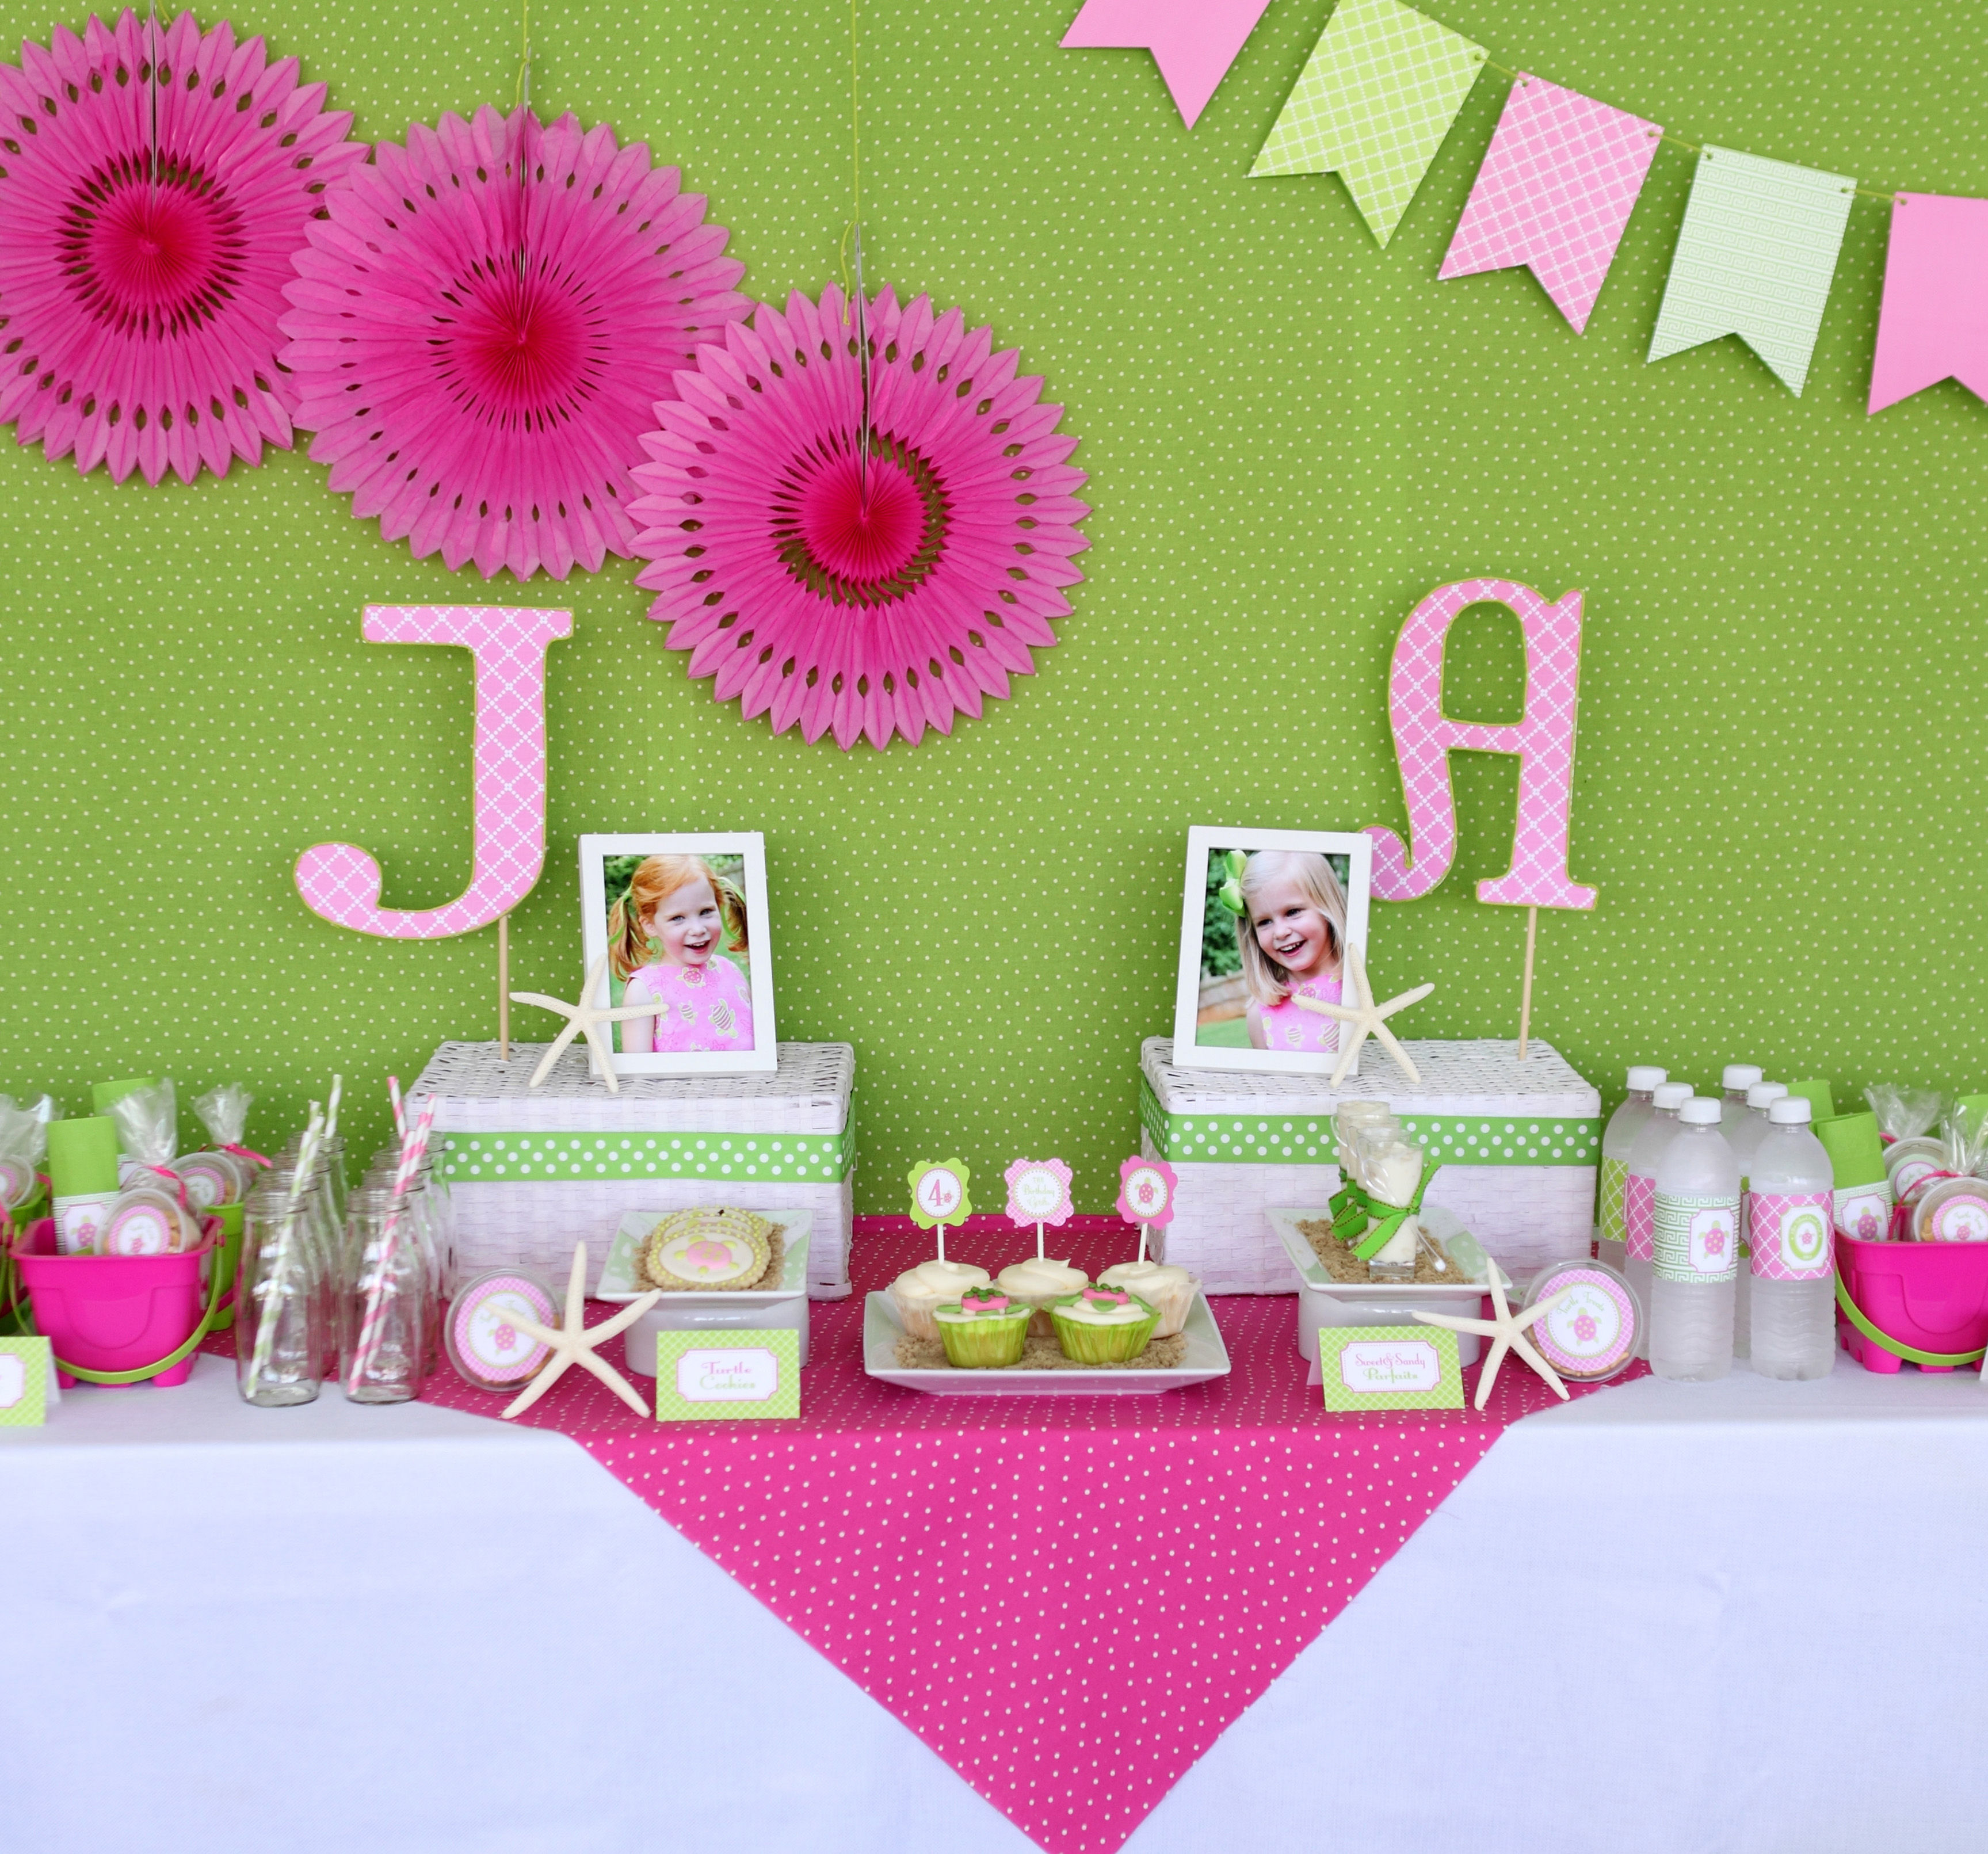 оформление комнаты на день рождения девочки 5 лет